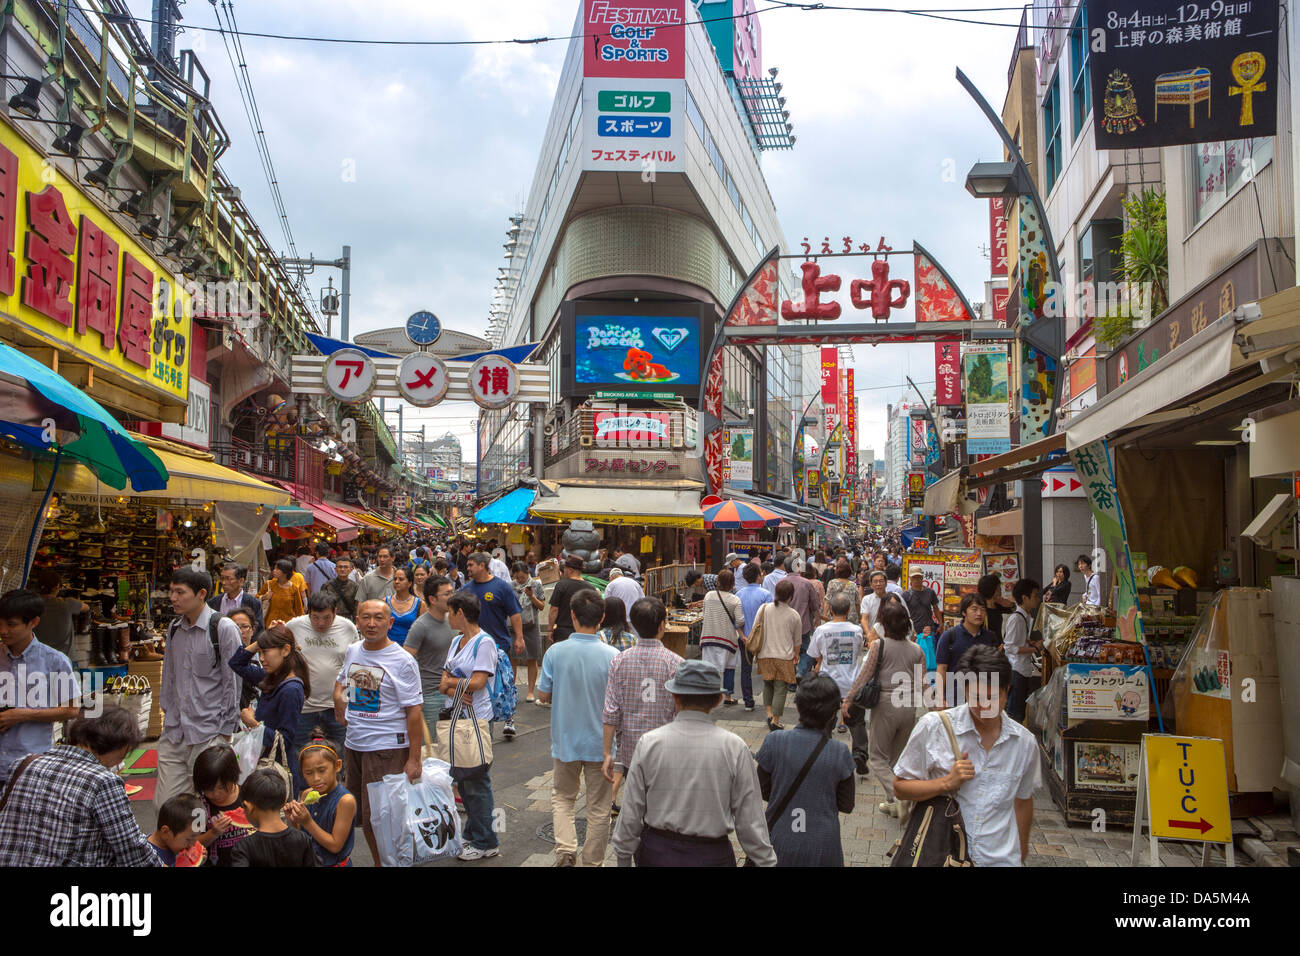 Japan, Tokio, Stadt, Ueno, Bezirk, bunte, überfüllt, berühmt, Markt, Einkaufen, Asien Straße, traditionell, ueno Stockfoto